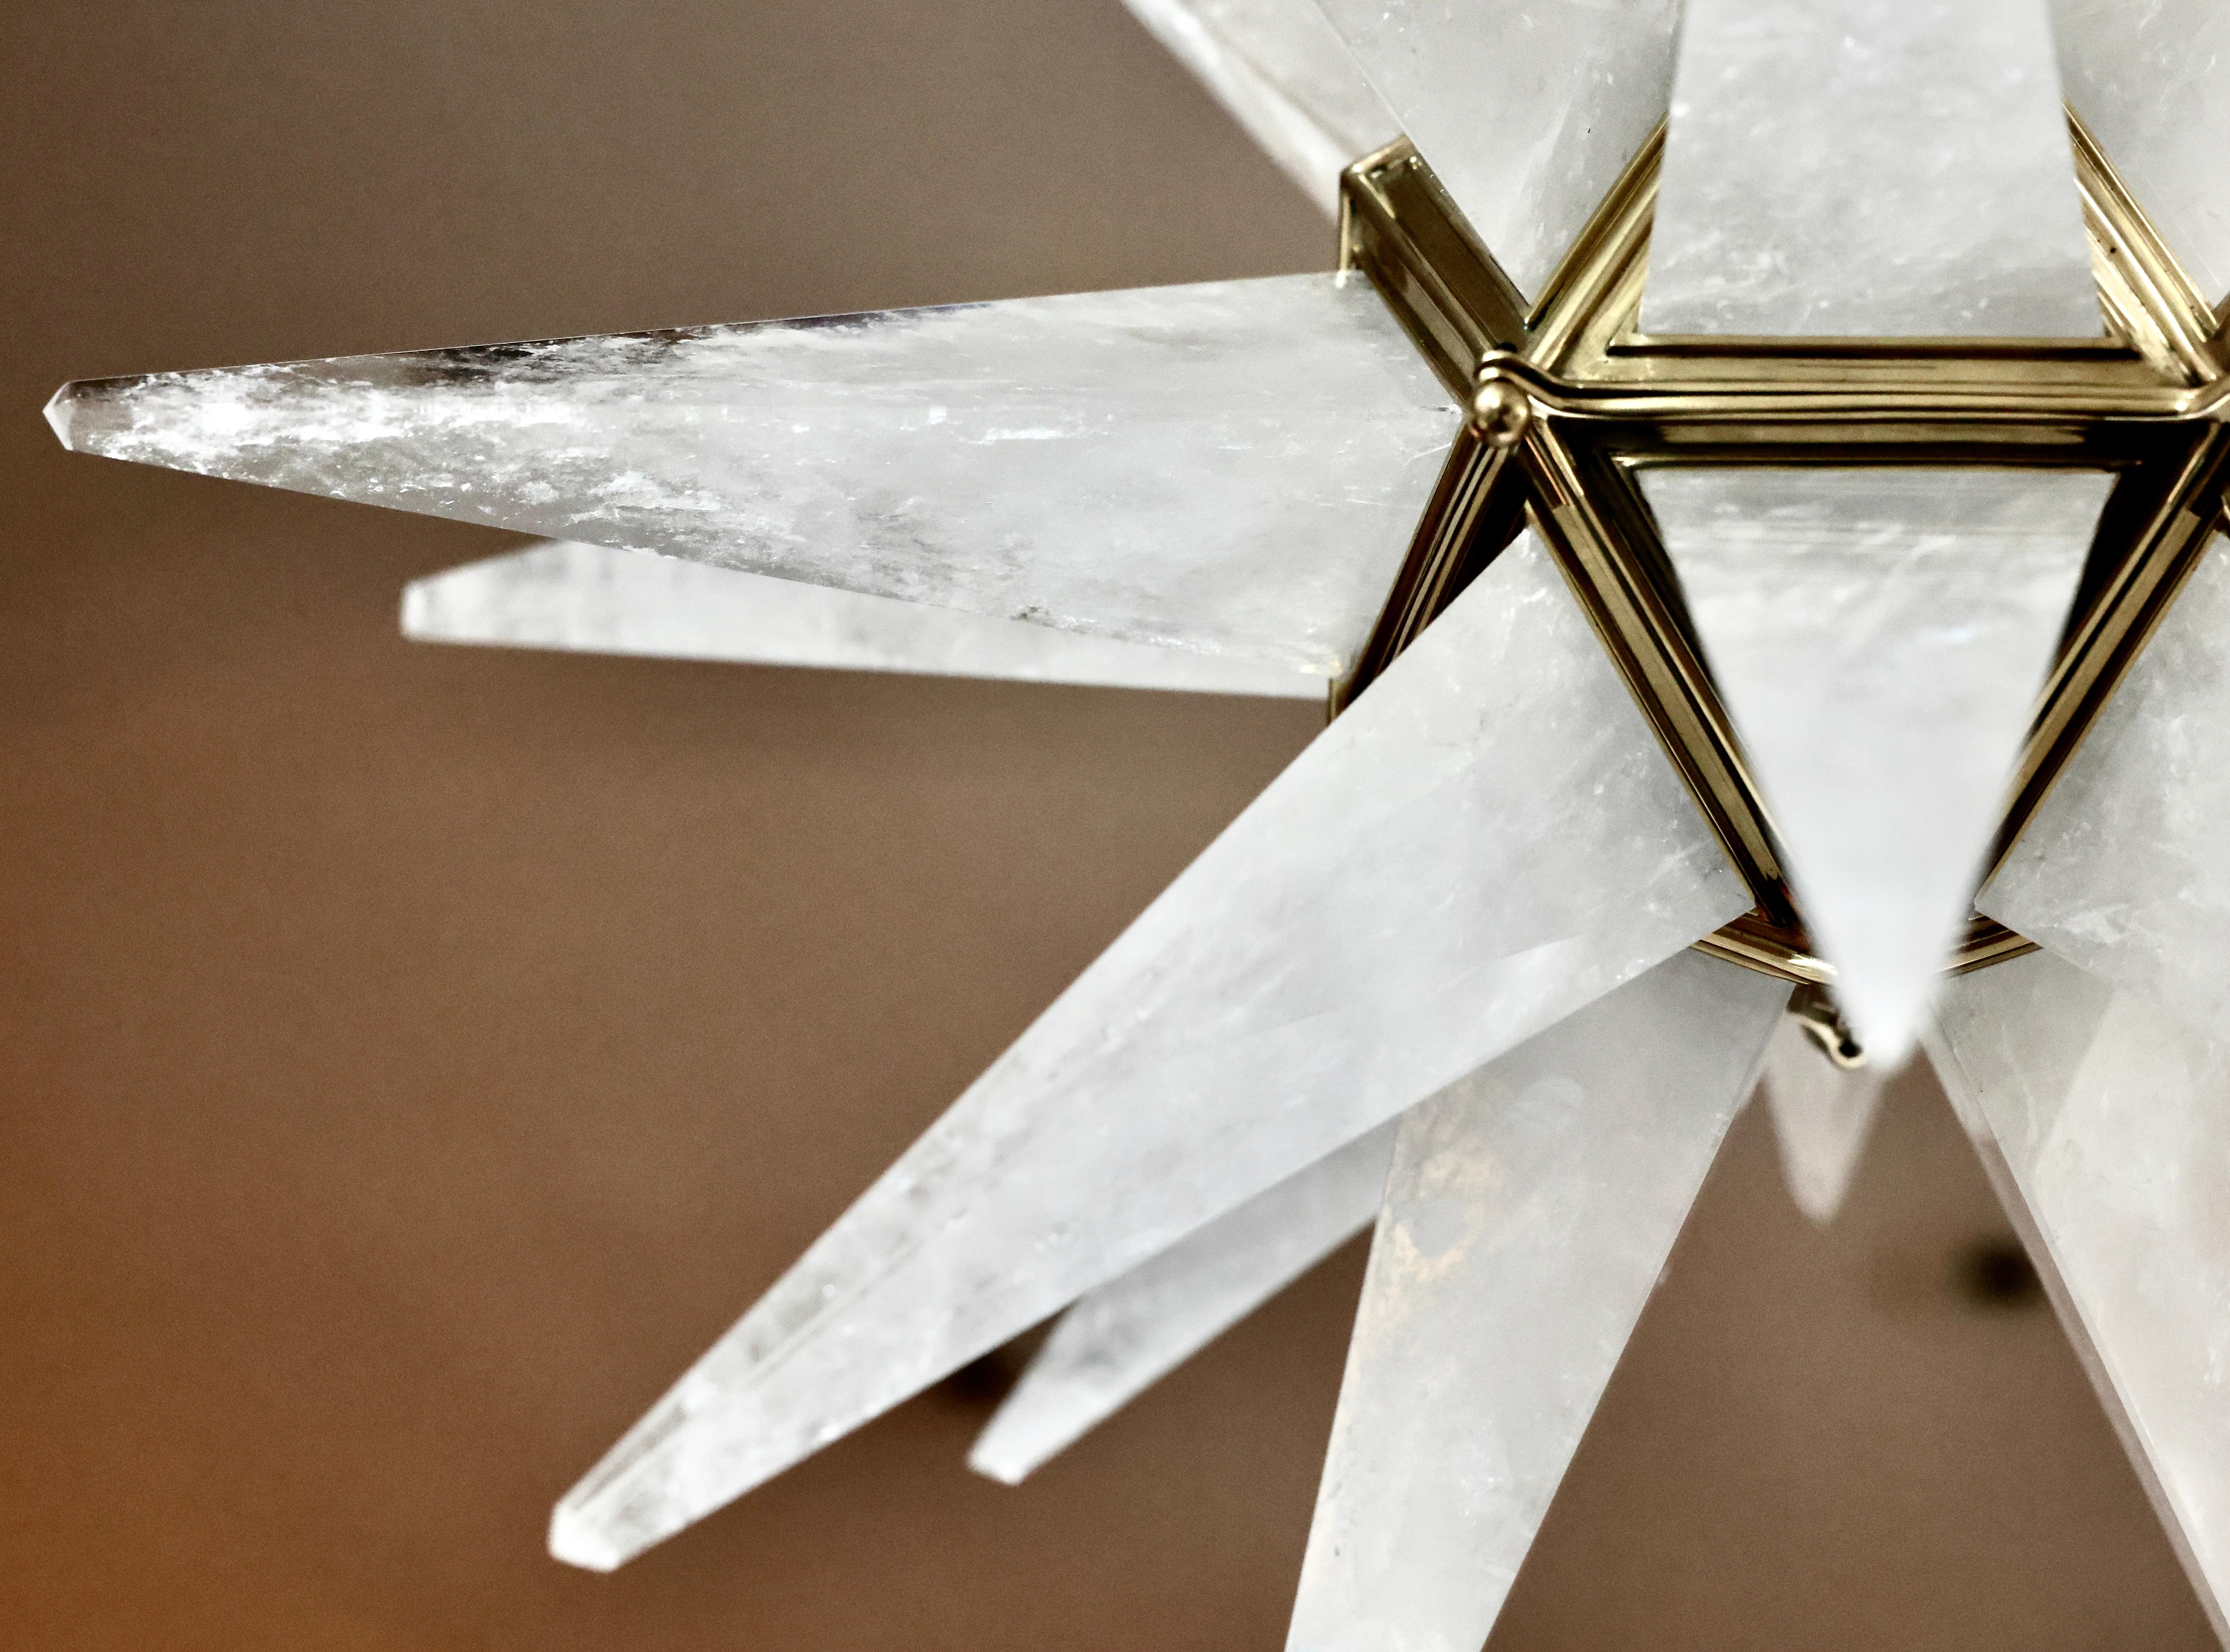 Fein geschnitzter Stern aus Bergkristall mit Rahmen aus poliertem Messing. Erstellt von Phoenix Gallery, NYC.
Höhenverstellbar.

Installieren Sie 2 Kandelaberfassungen, je 60 Watt, insgesamt 120 Watt. 
Metalloberfläche und individuelle Größe auf